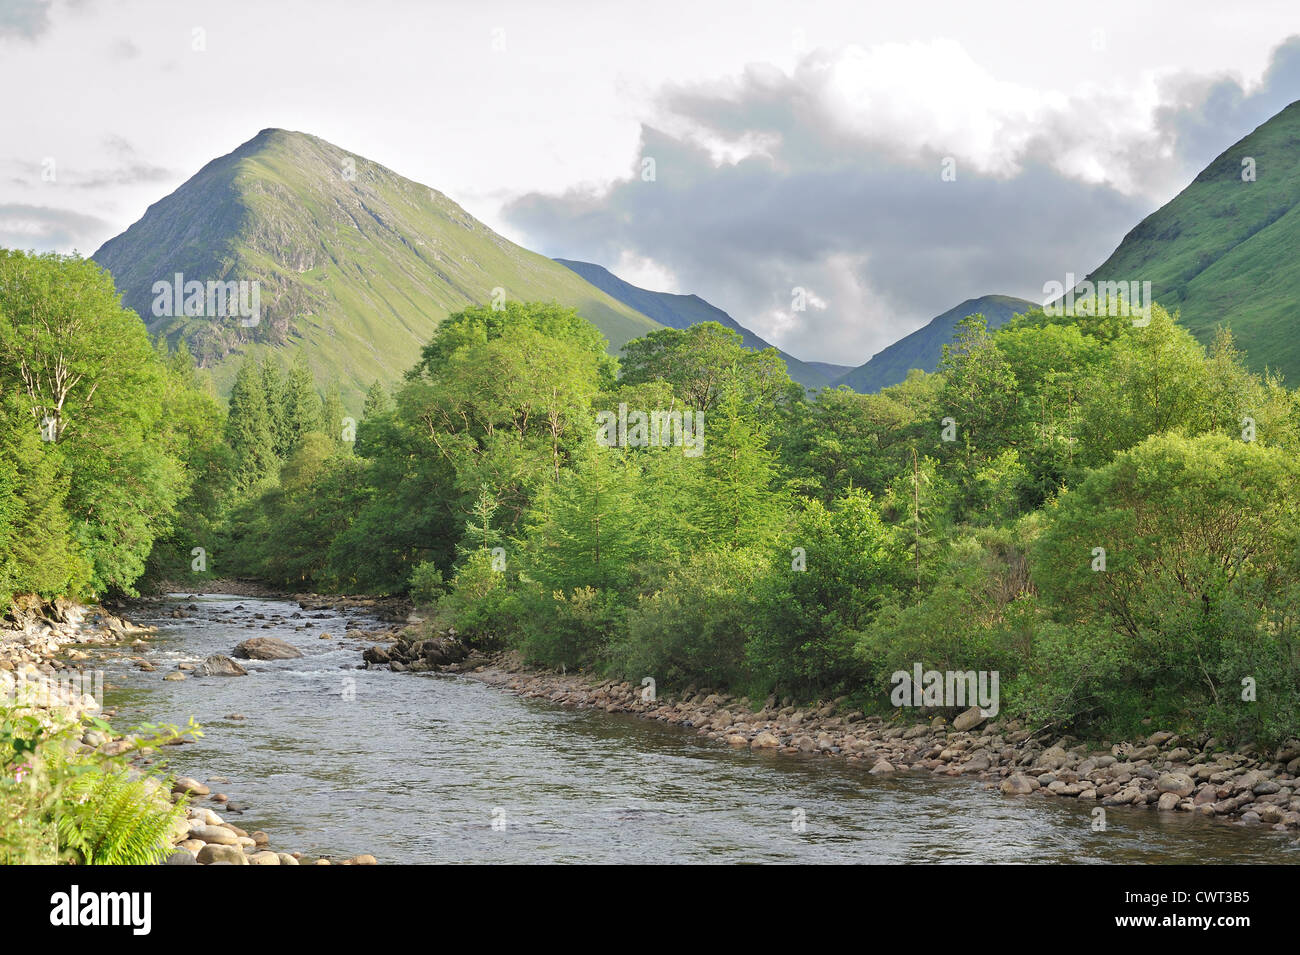 The River Coe runs through the mountains of Glencoe Stock Photo